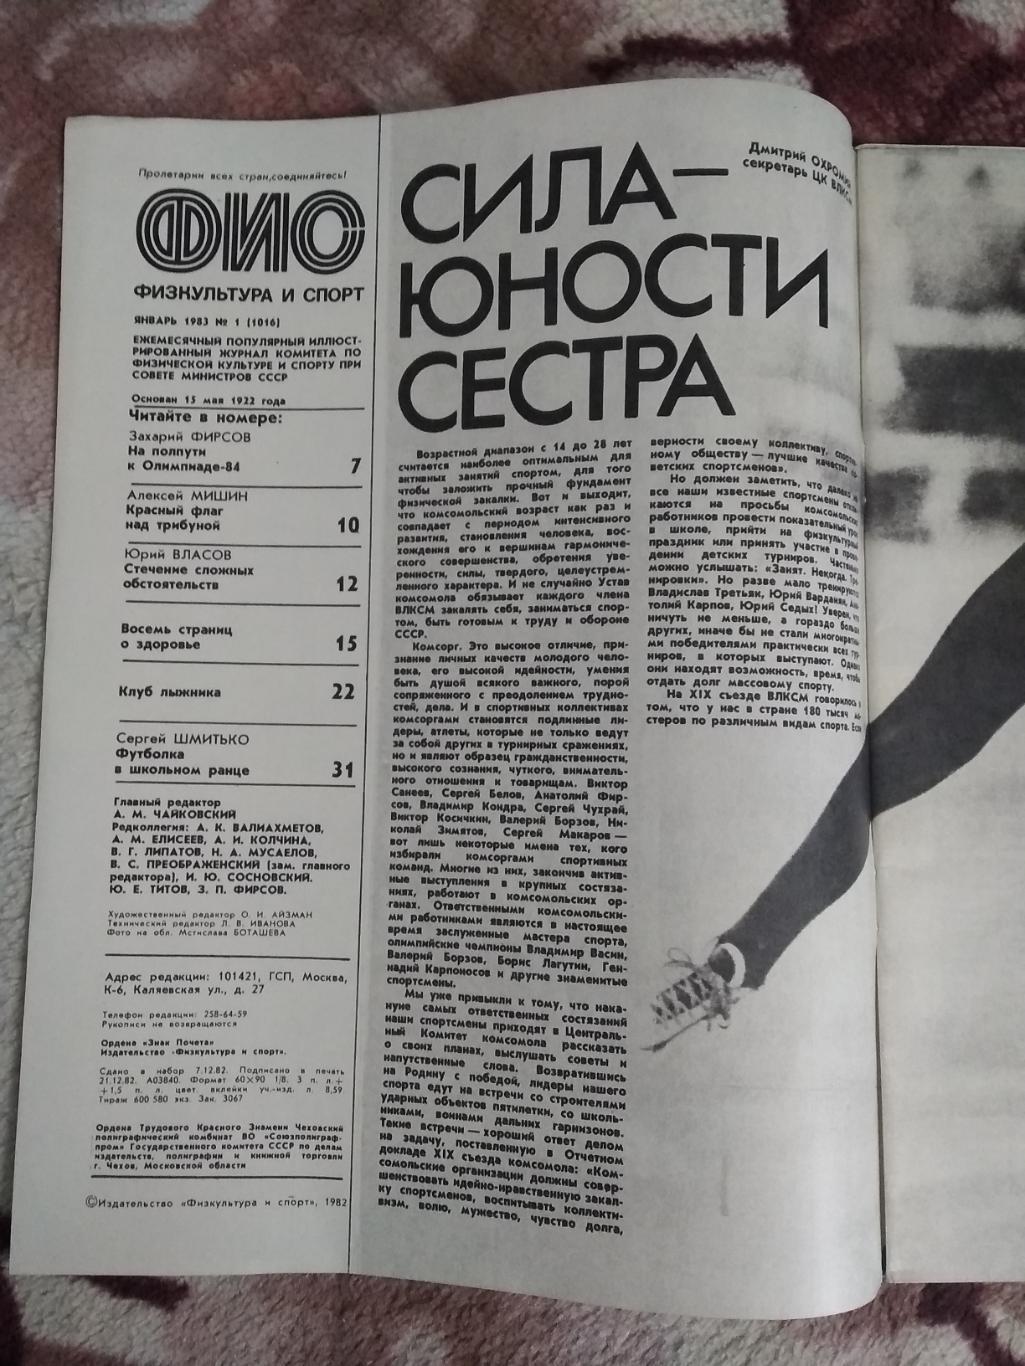 Журнал.Физкультура и спорт № 1 1983 г. (ФиС). 1